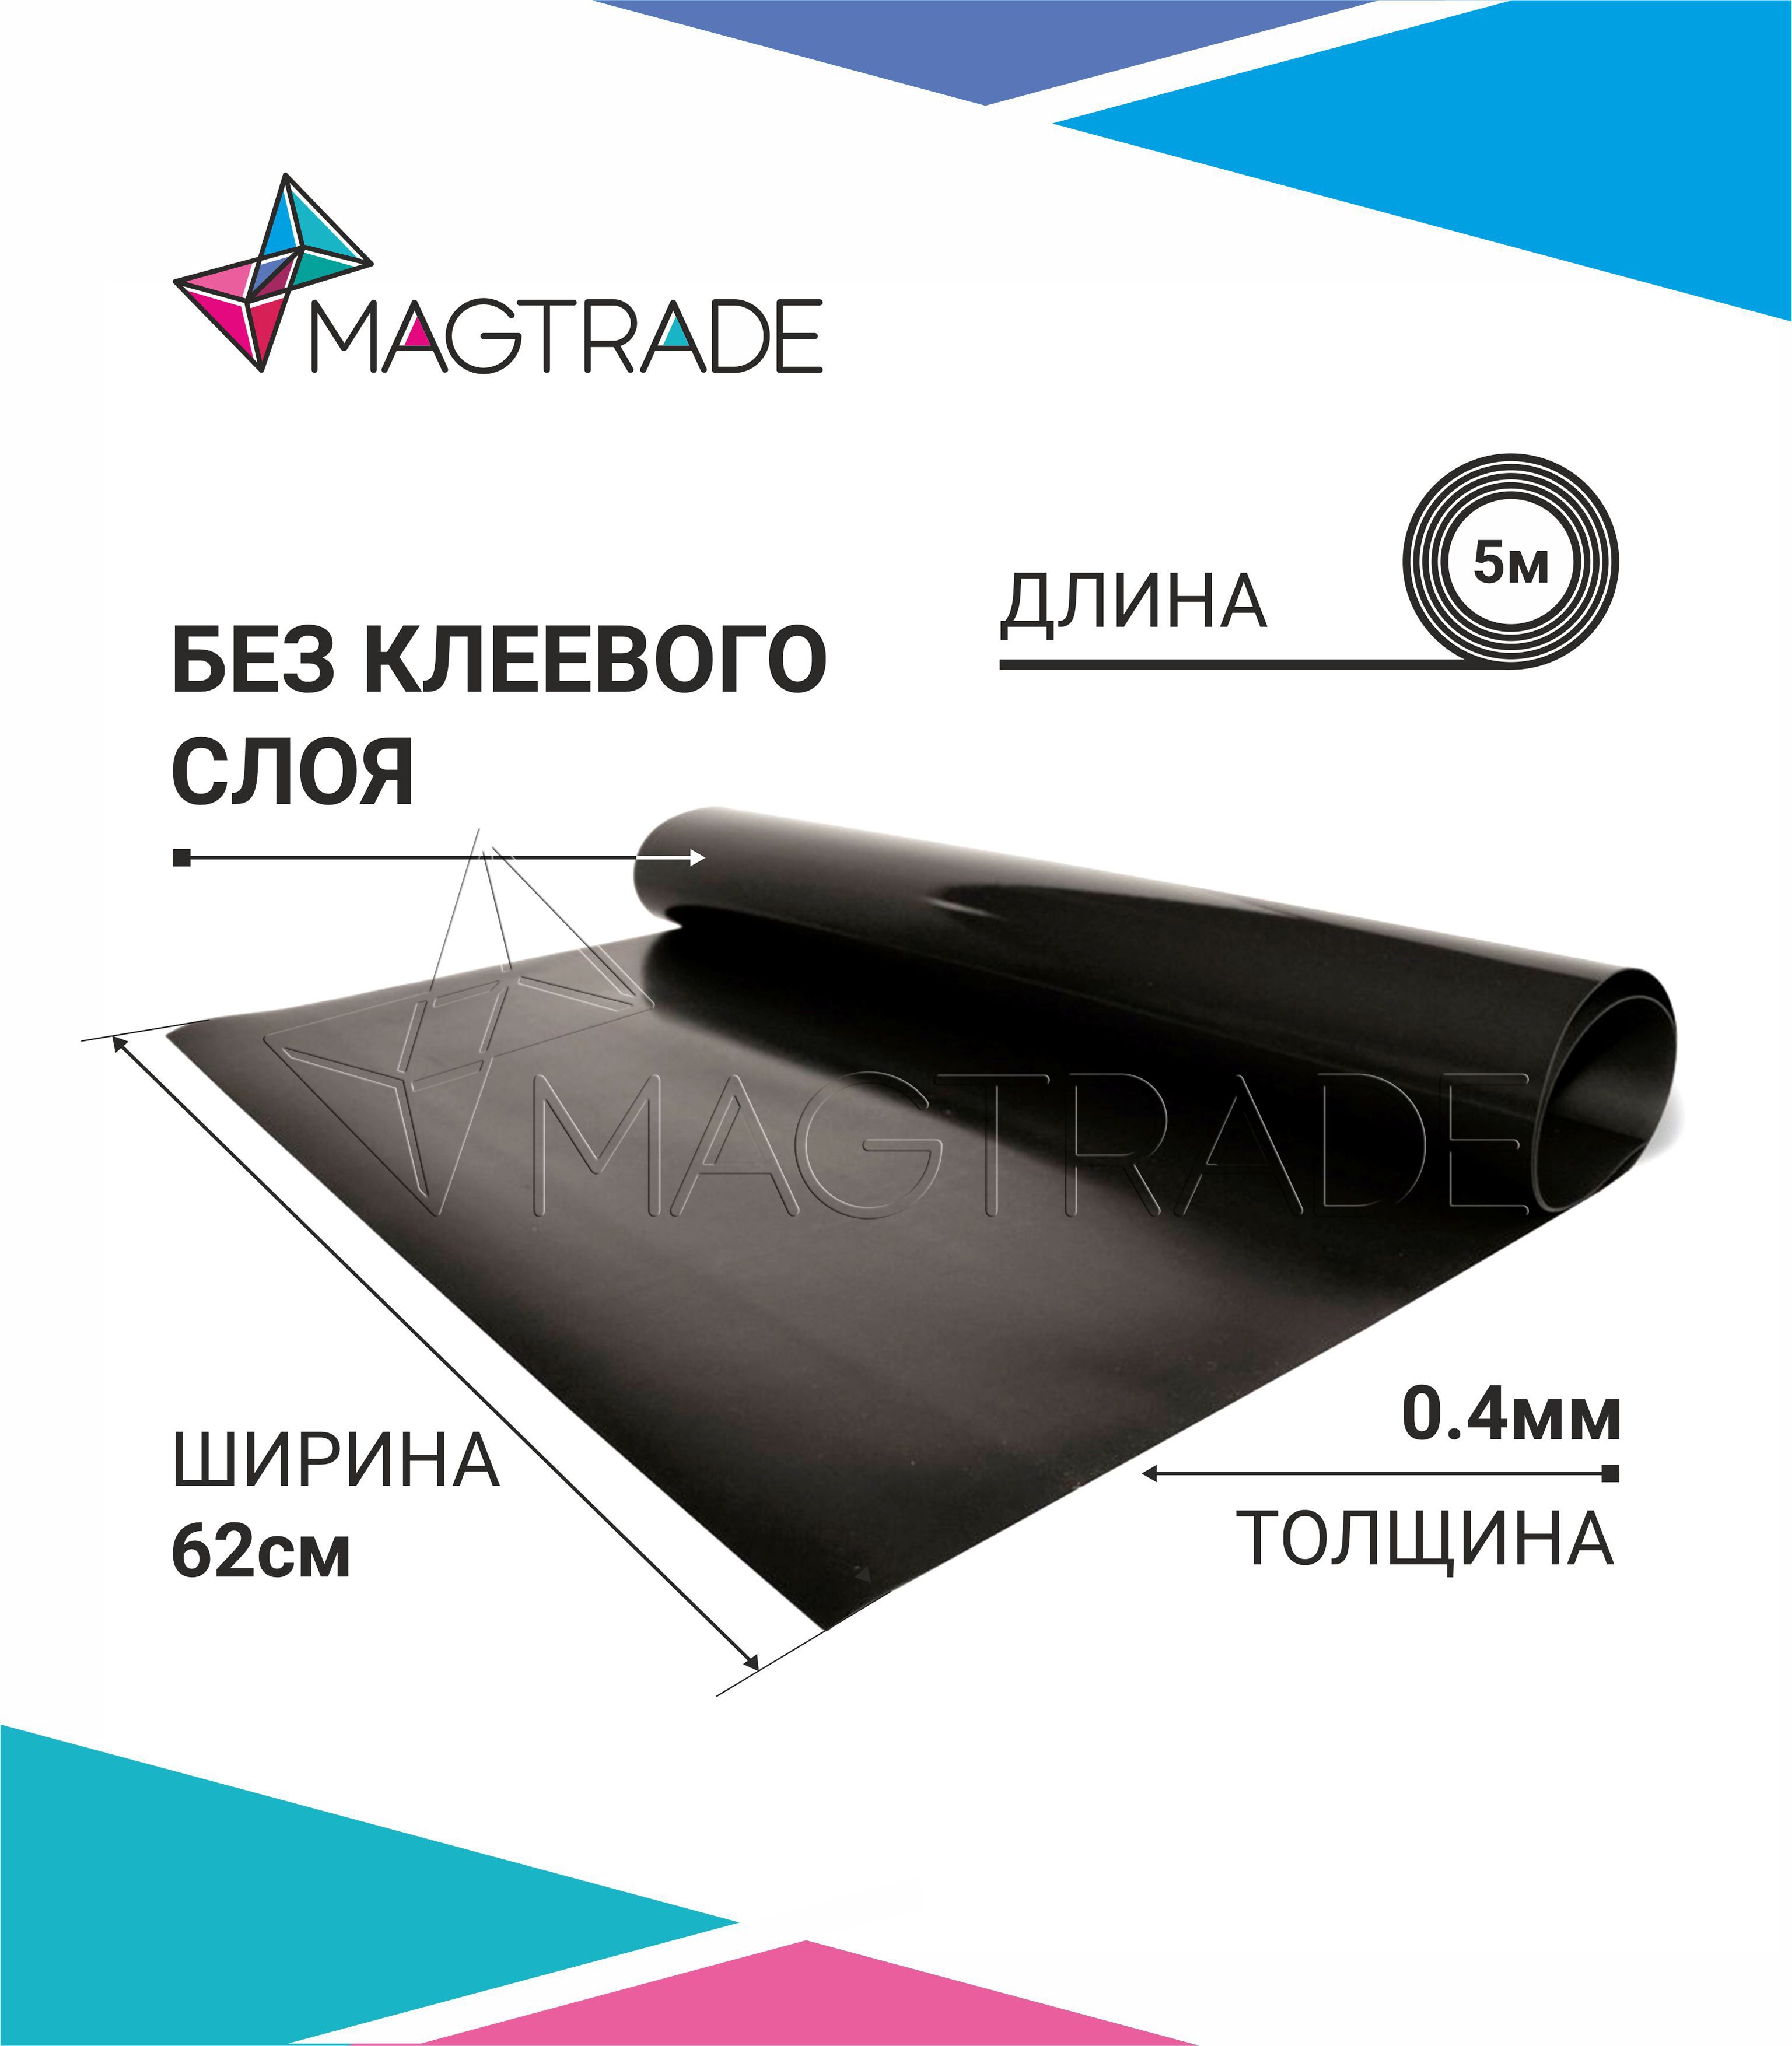 Магнитный винил MAGTRADE без клеевого слоя 0,62 х 5 м, толщина 0,4 мм, лист 5 метров магнитный винил magtrade с клеем толщина 0 9 мм лист 5м